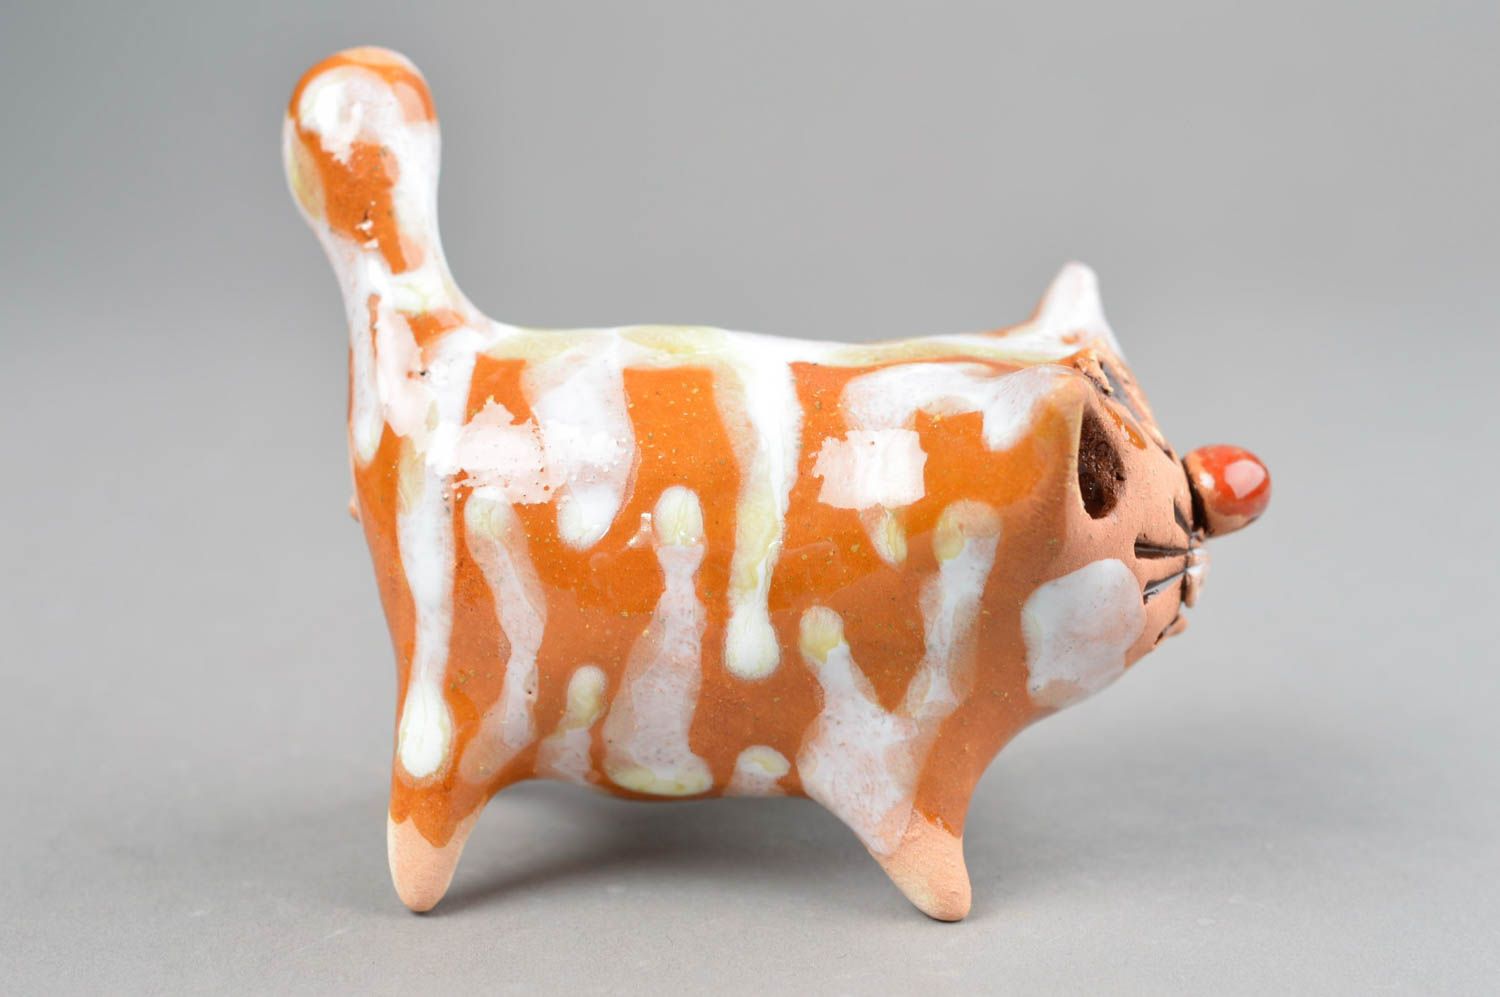 Глиняная статуэтка расписанная цветной глазурью хэнд мэйд Толстый кот оранжевый фото 4